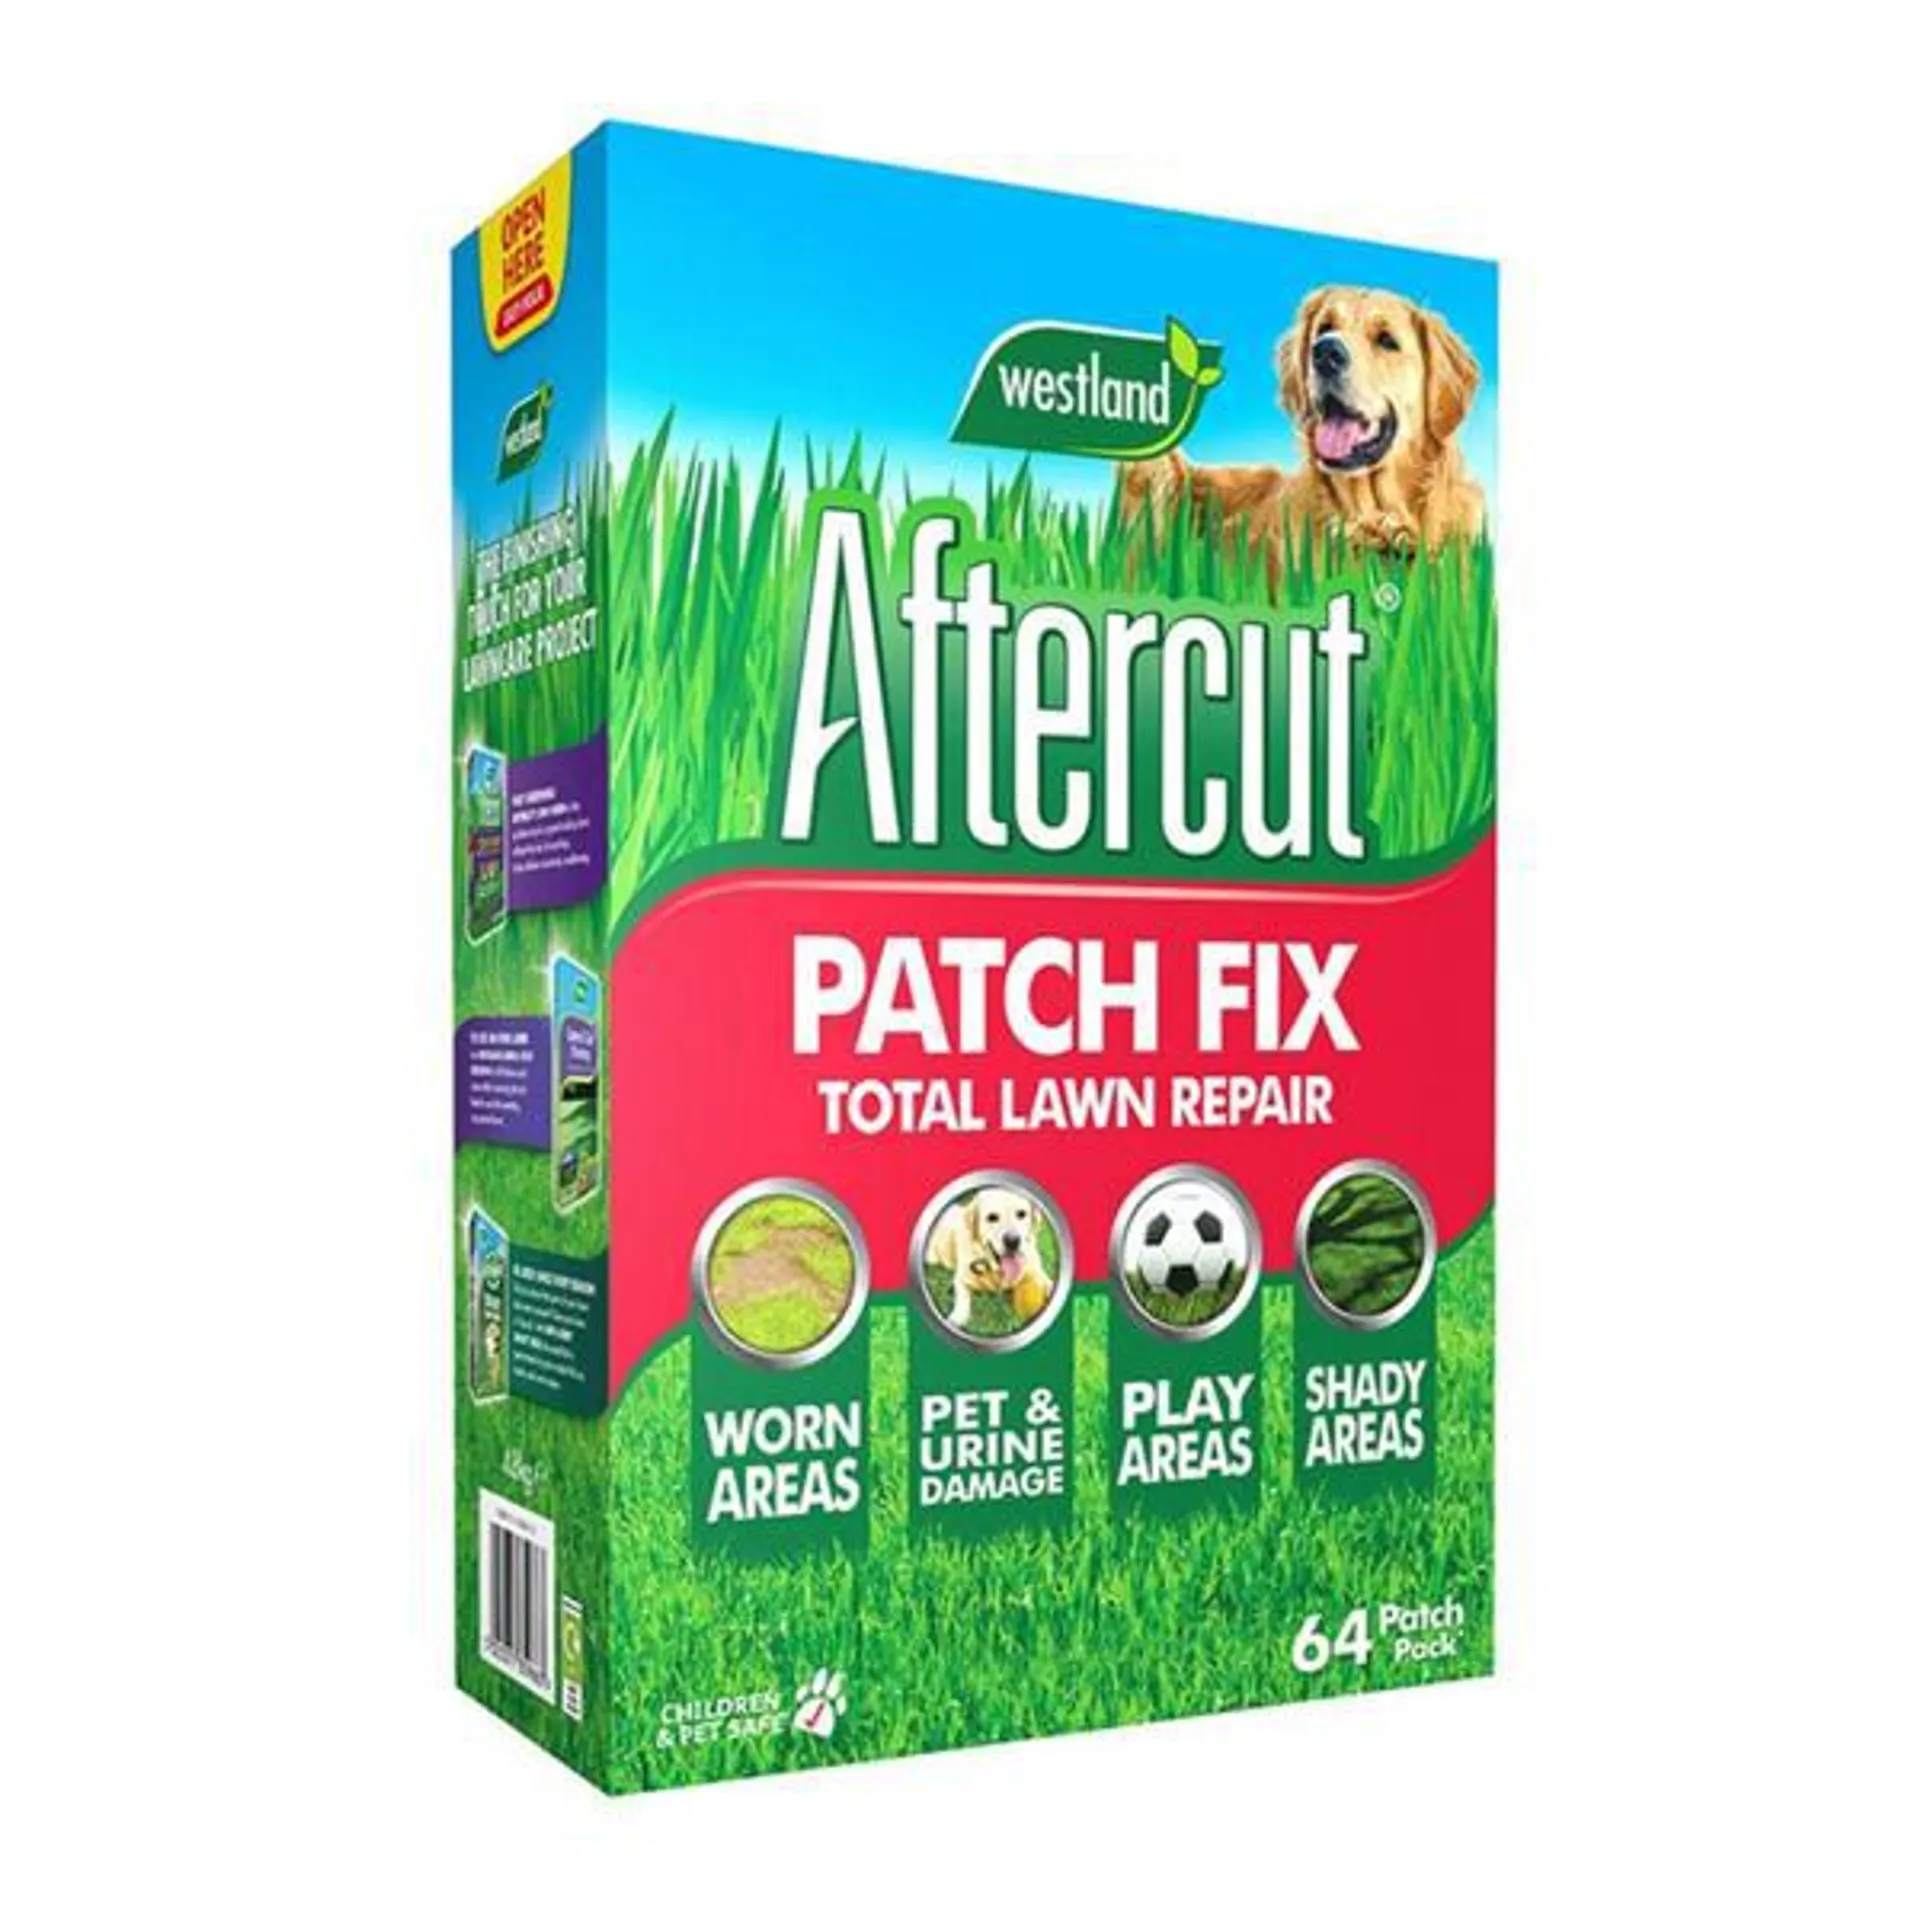 Aftercut Patch Fix 64 Patch Large Box 4.8Kg